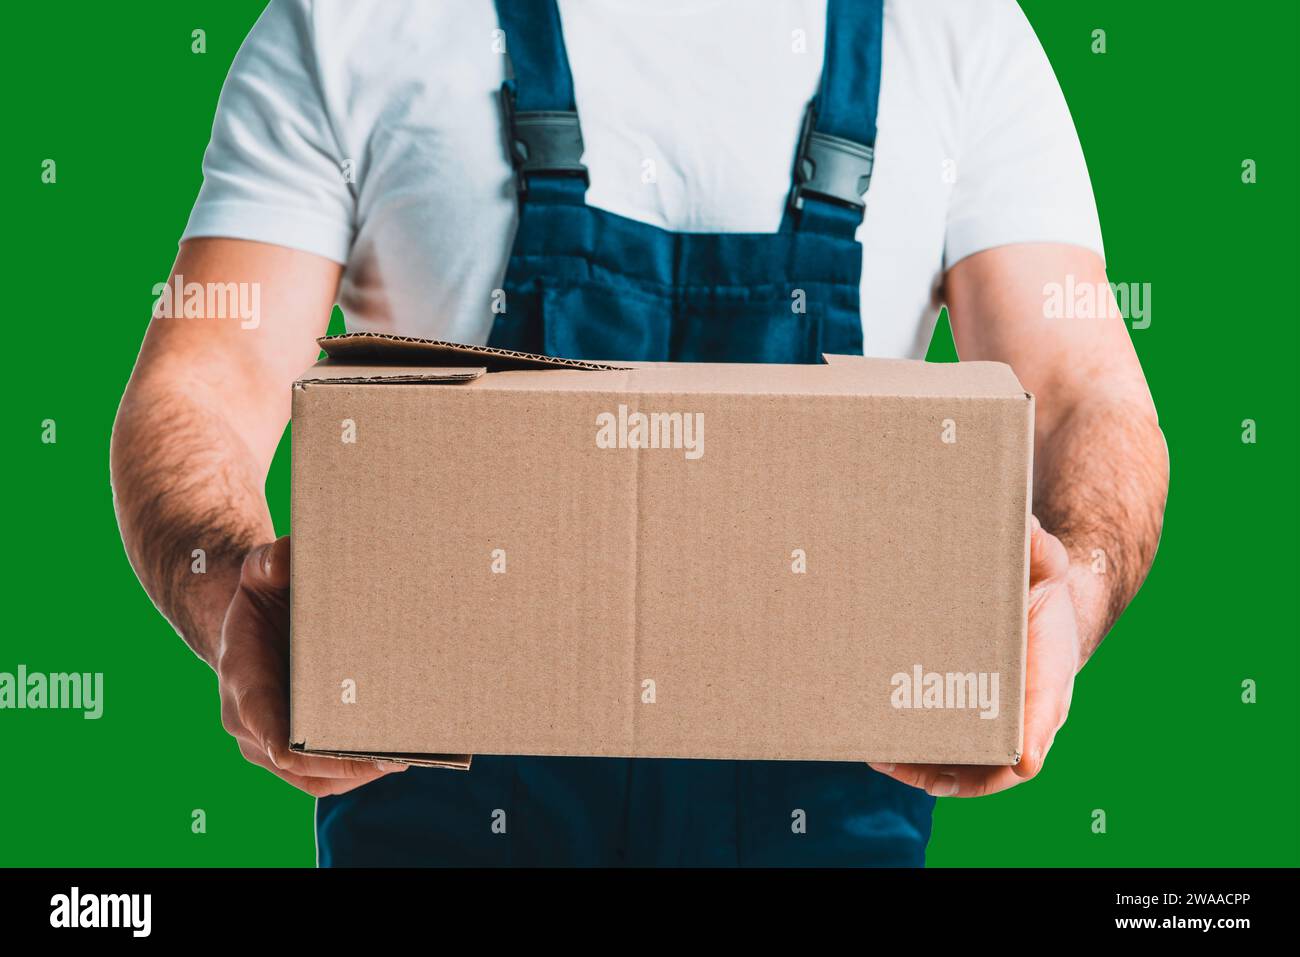 Der junge Liefermann hält einen Karton in den Händen mit dem Green Screen Chroma Key Ultra Key Stockfoto